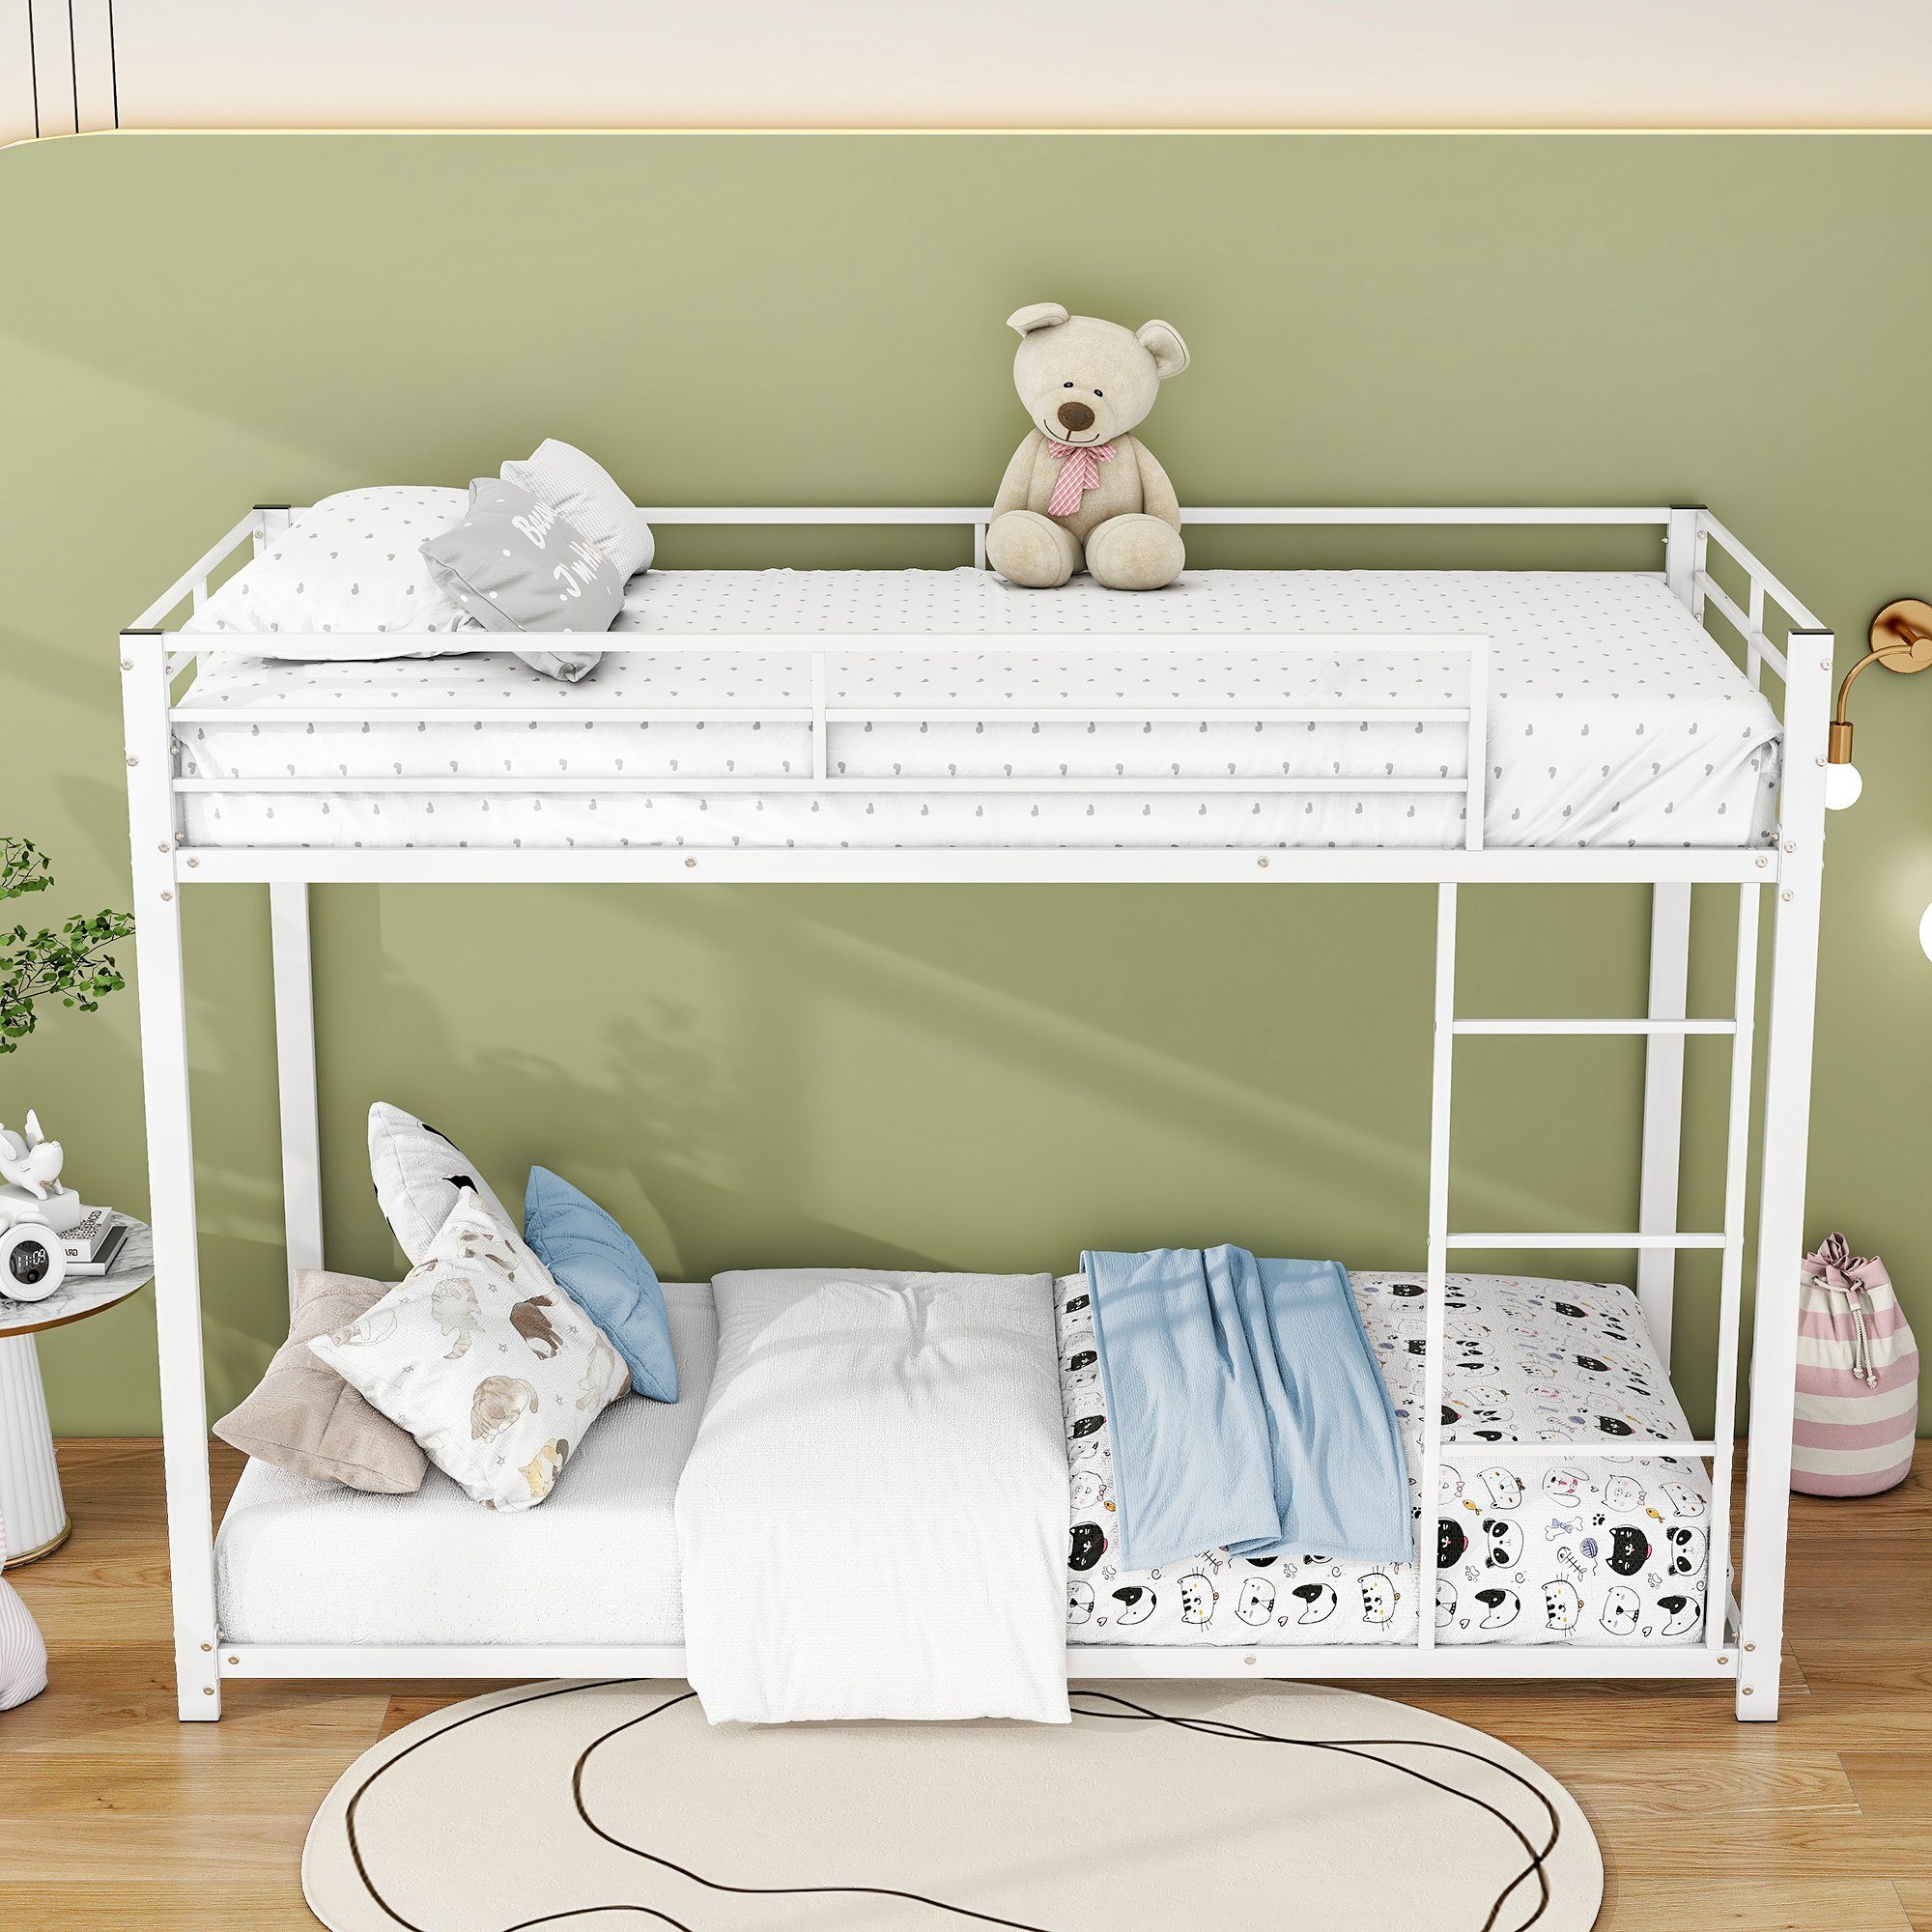 cm Etagenbett Kinderbett in Eisenetagenbetten Eisenbetten, klassischer Weiß Metall, 90×200 Form, Ulife